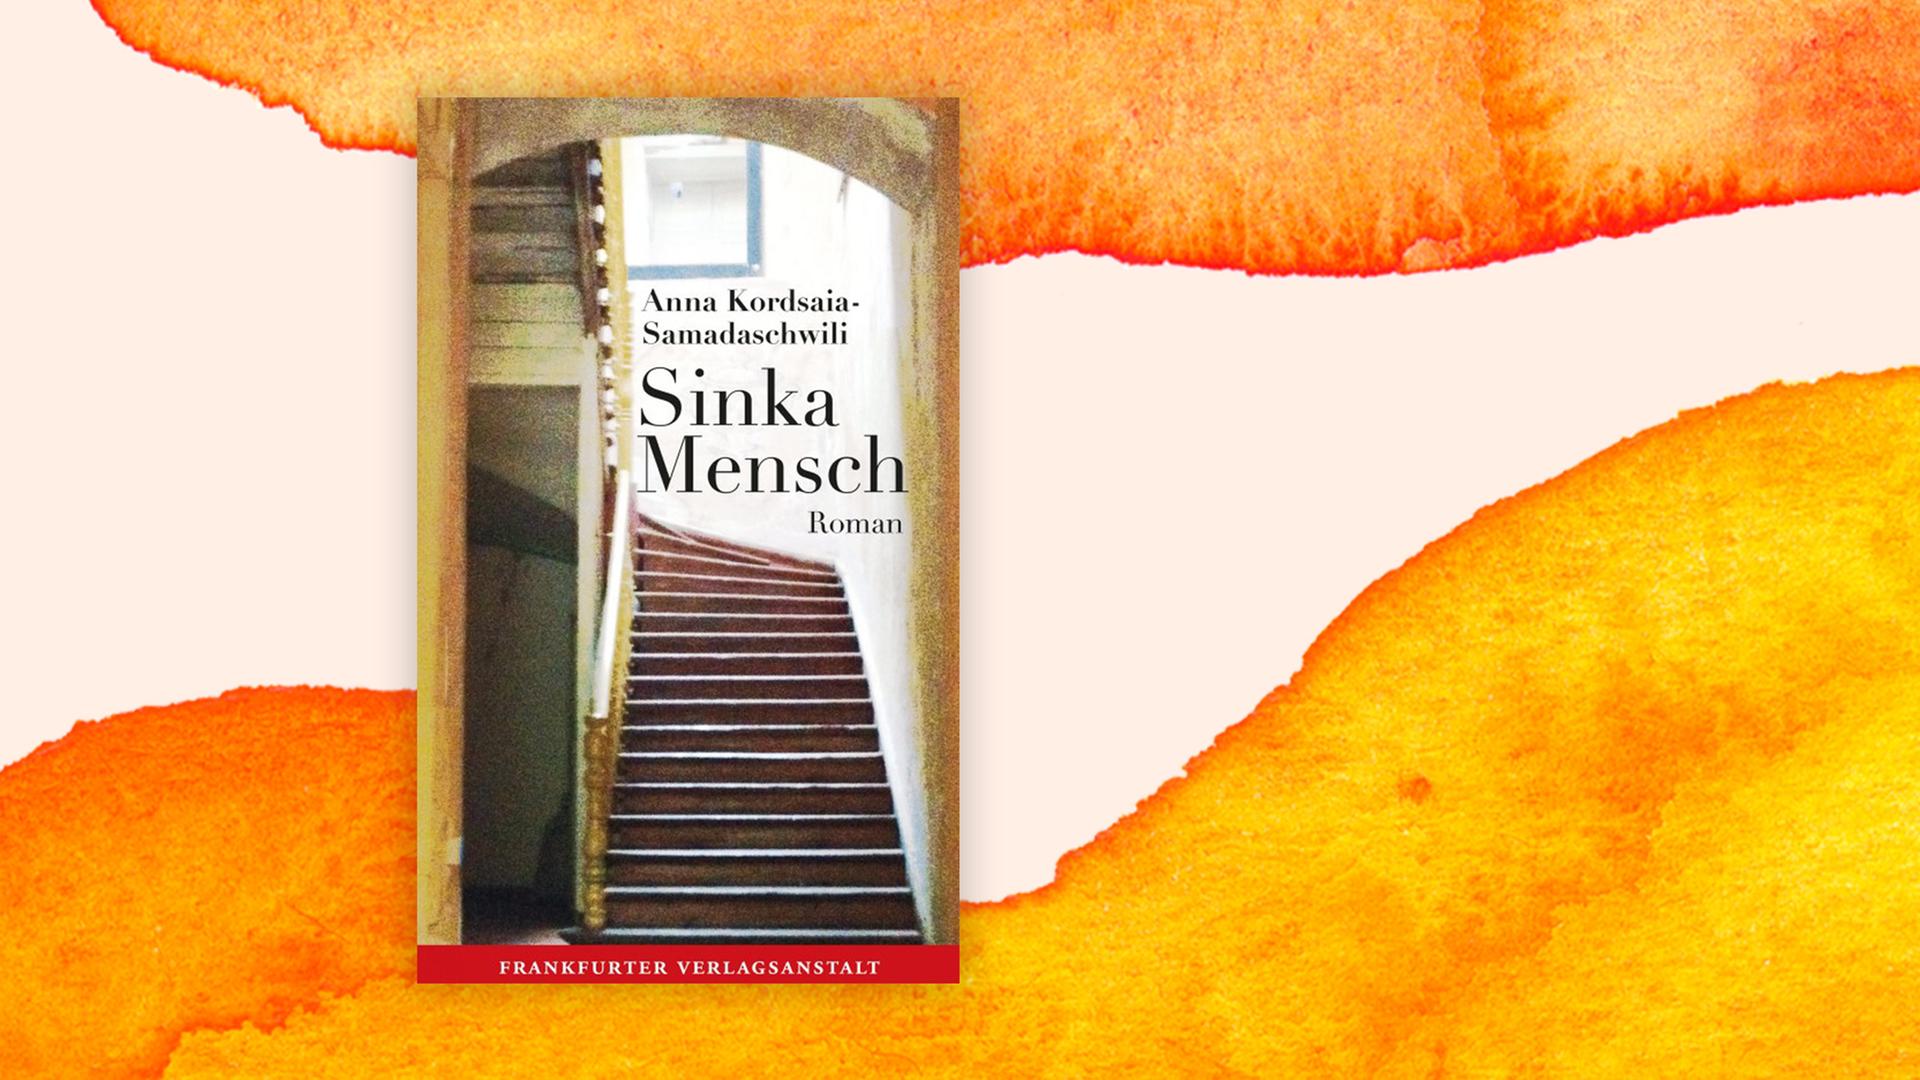 Buchcover zu "Sinka Mensch" von Anna Kordsaia-Samadaschwili